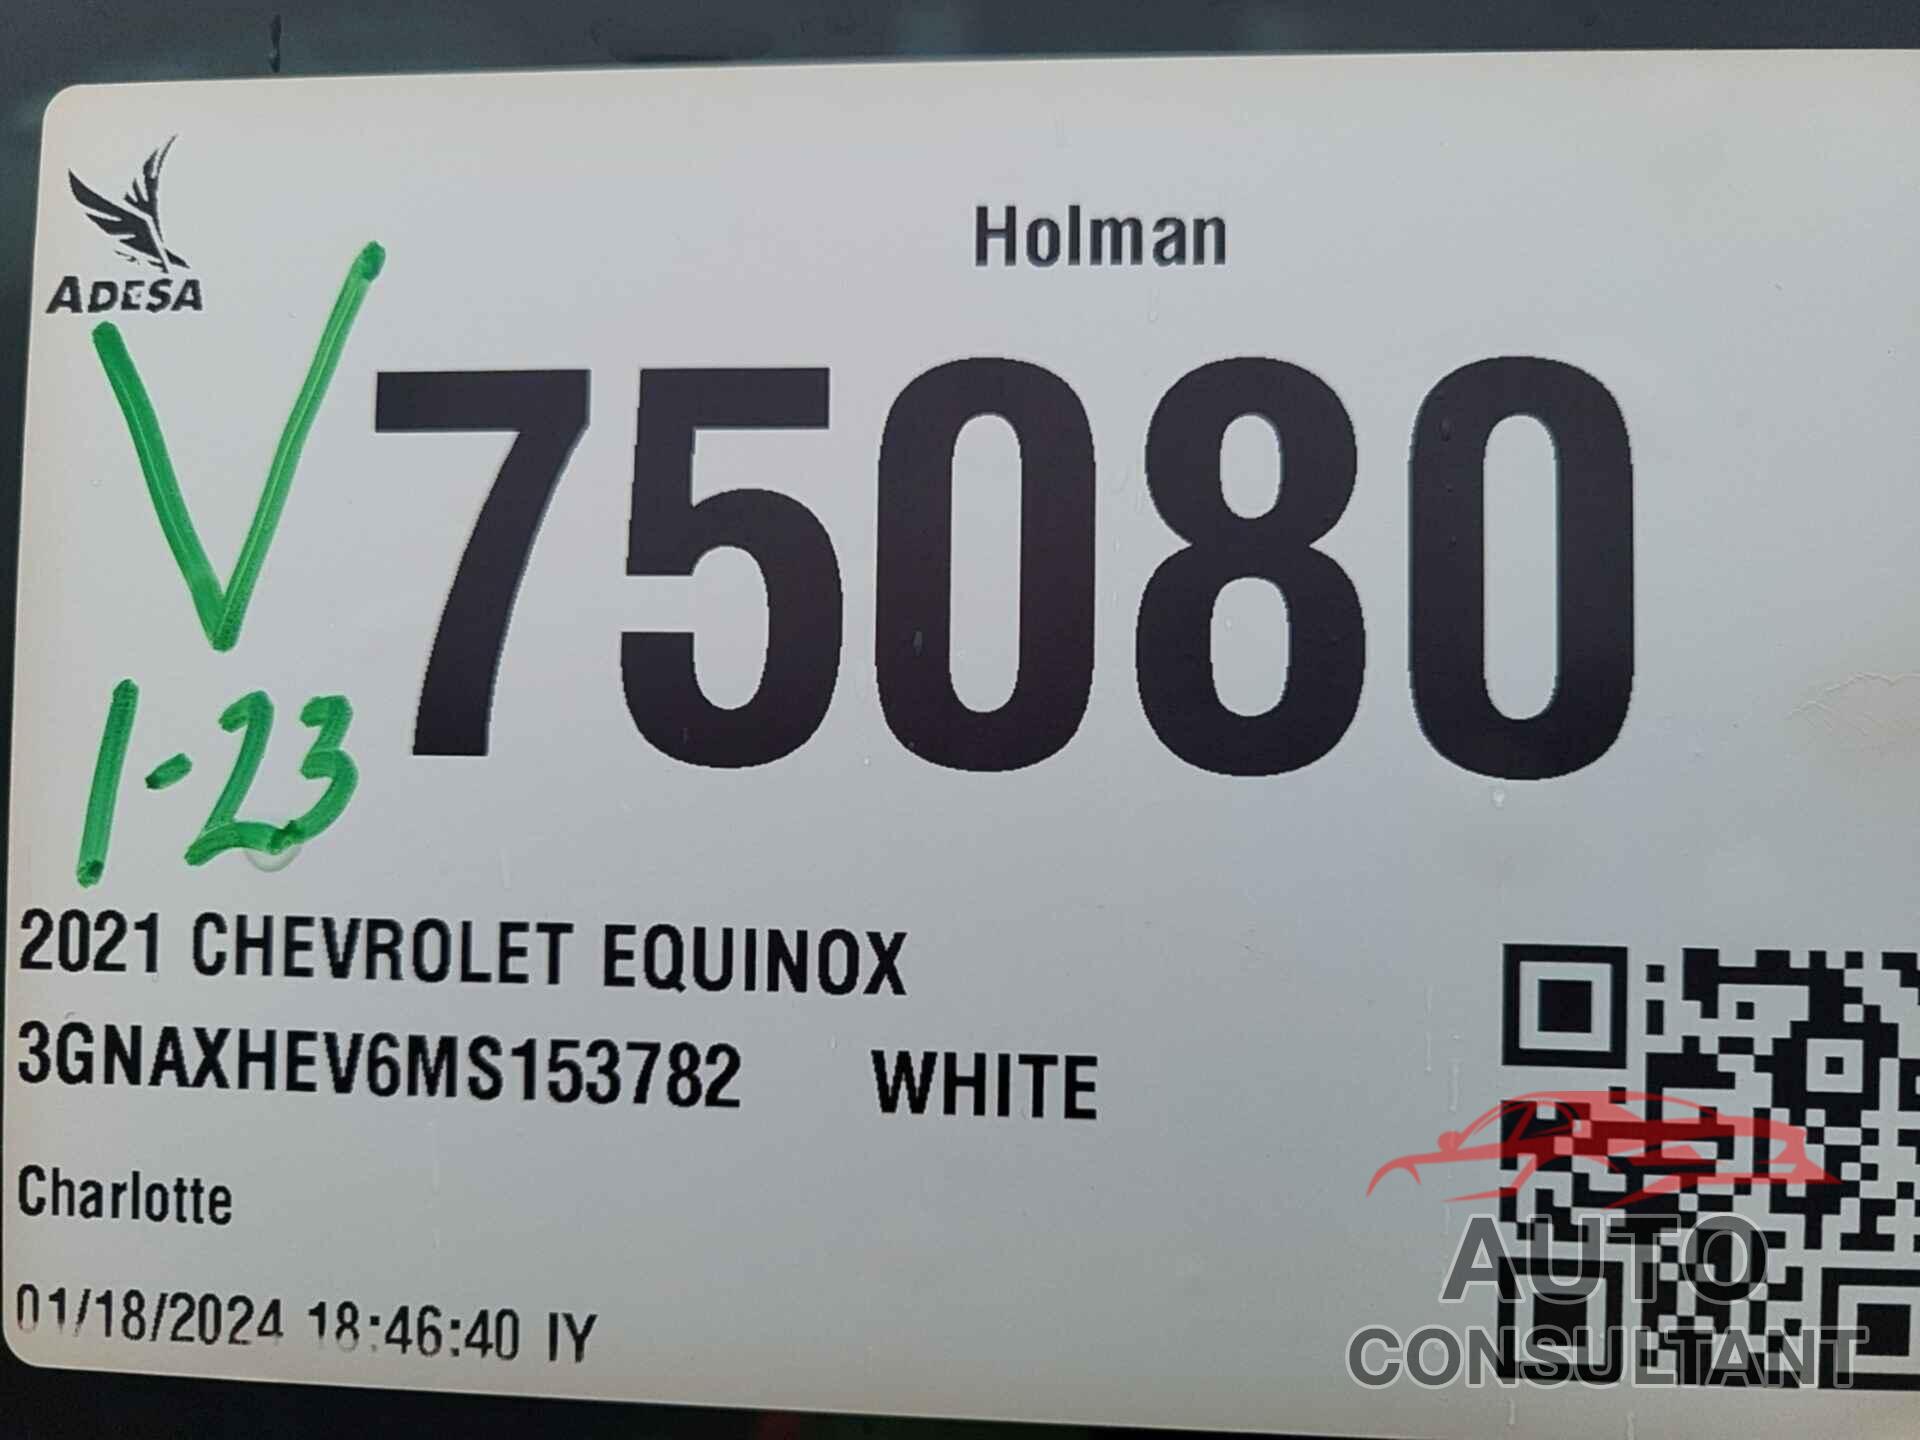 CHEVROLET EQUINOX 2021 - 3GNAXHEV6MS153782